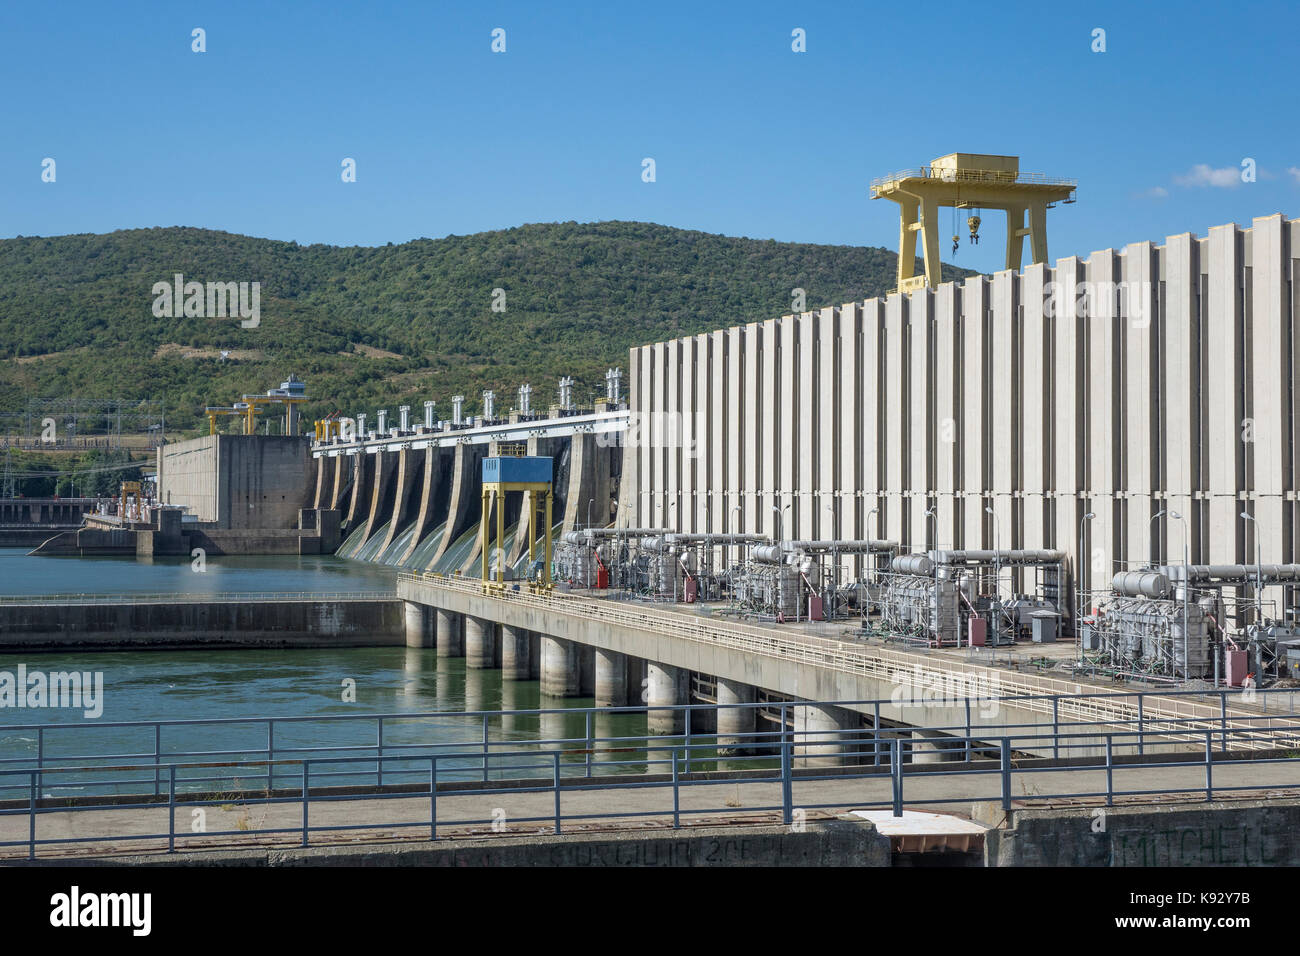 La Romania, il fiume Danubio, iron gate lock n.1 & centrale idroelettrica Foto Stock